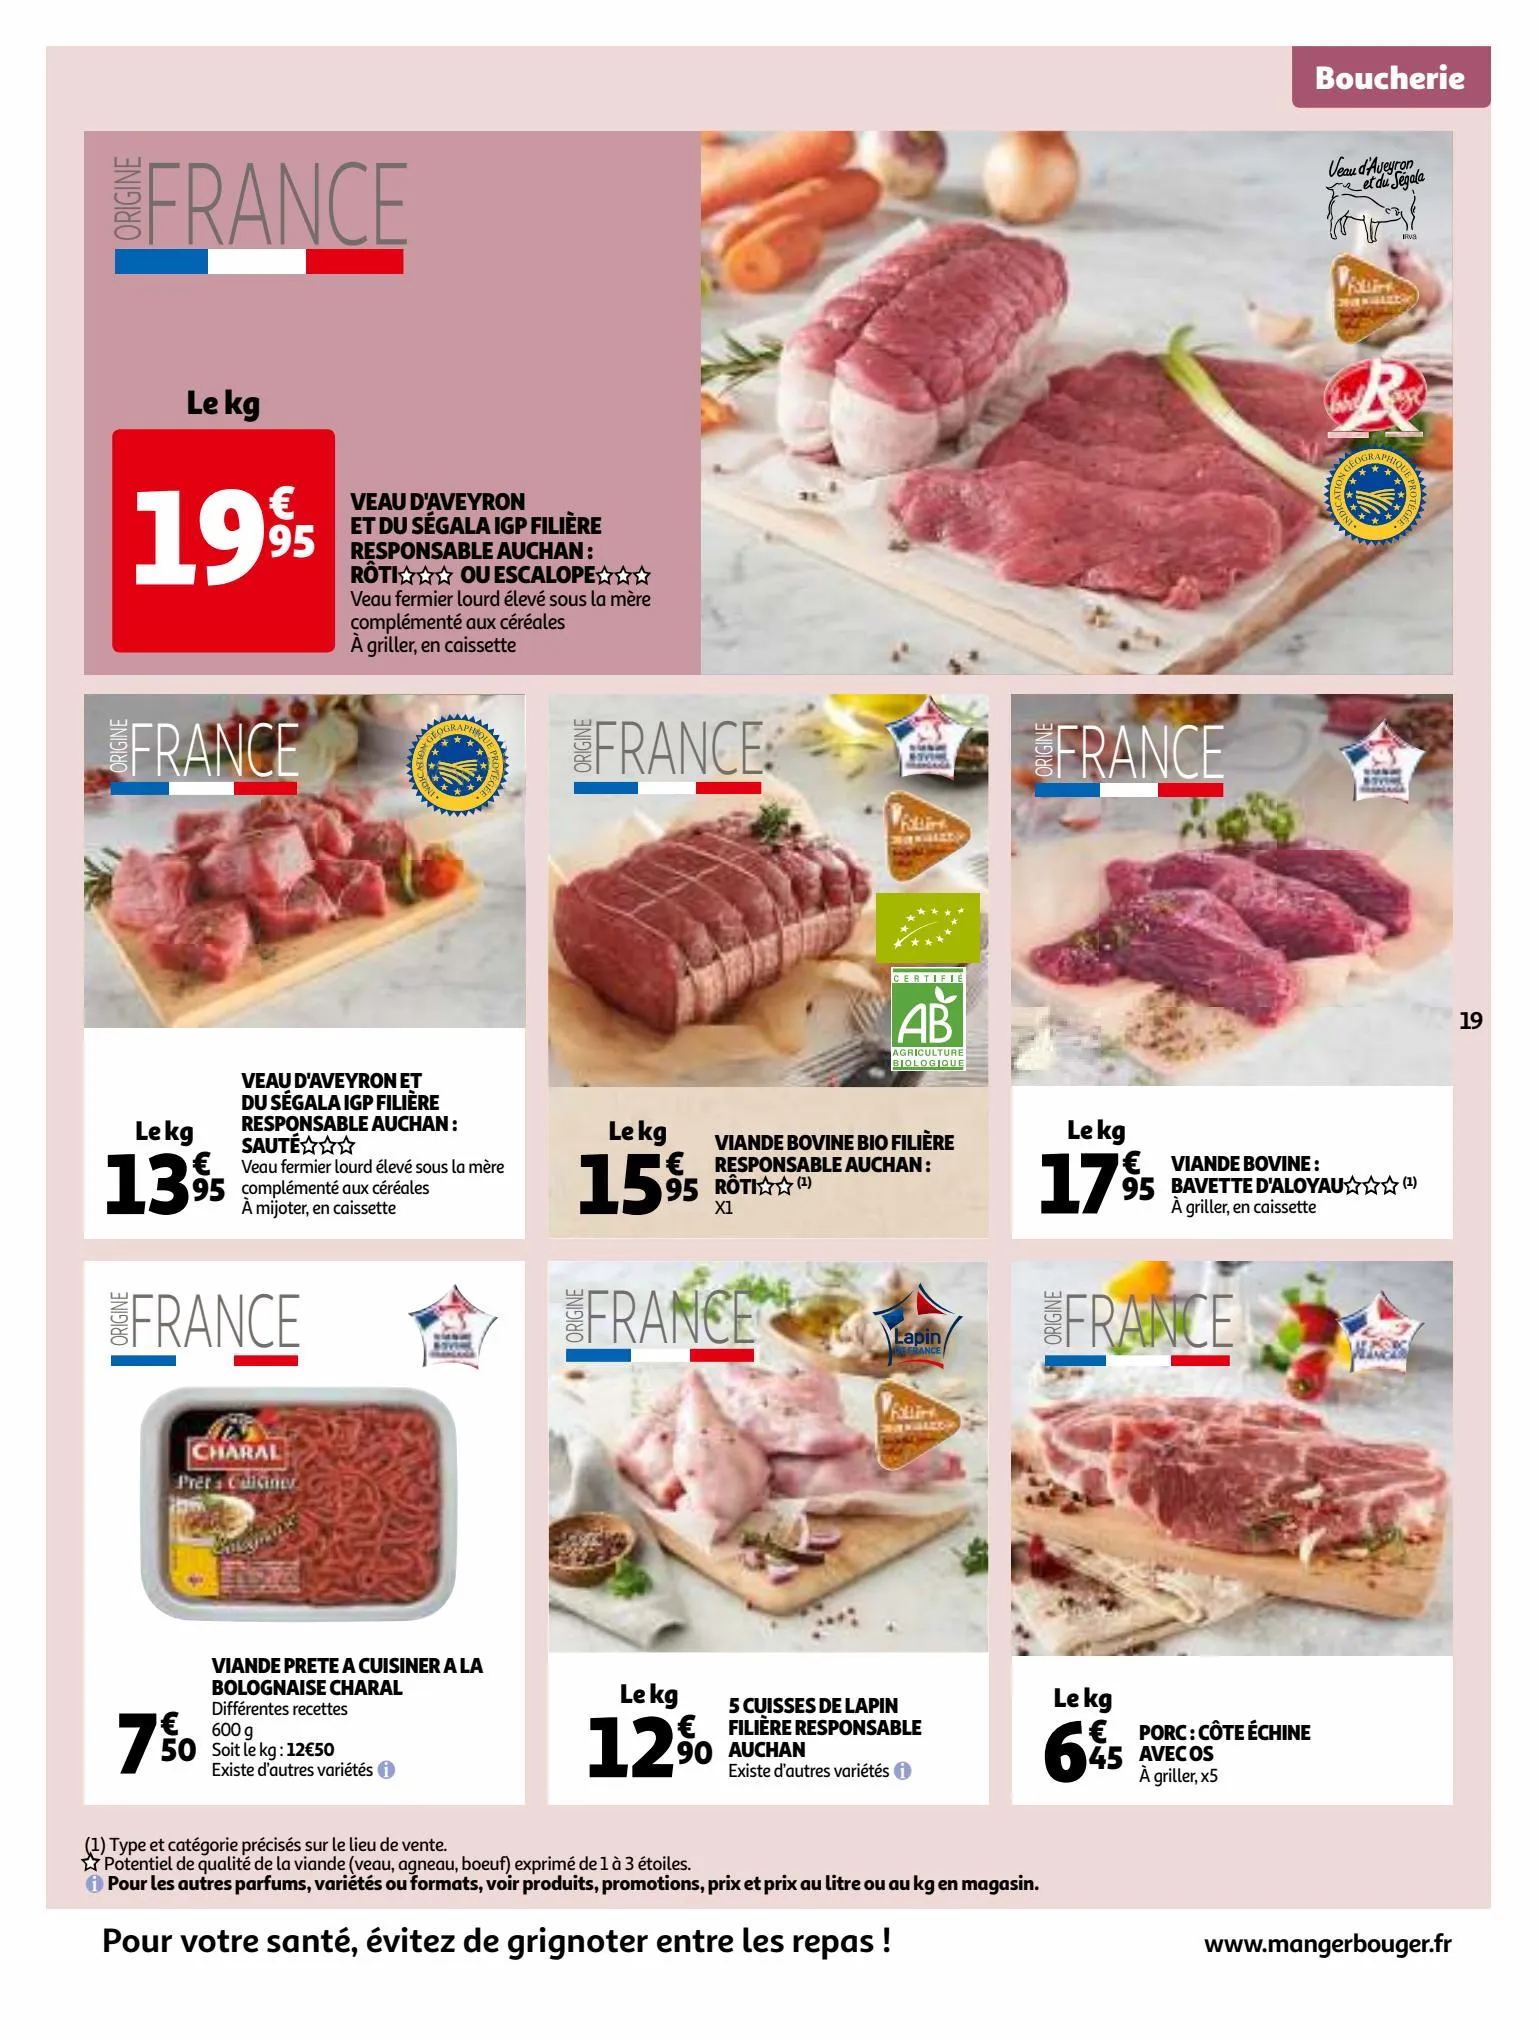 Catalogue Vos produits laitiers préférés à petit prix!, page 00019